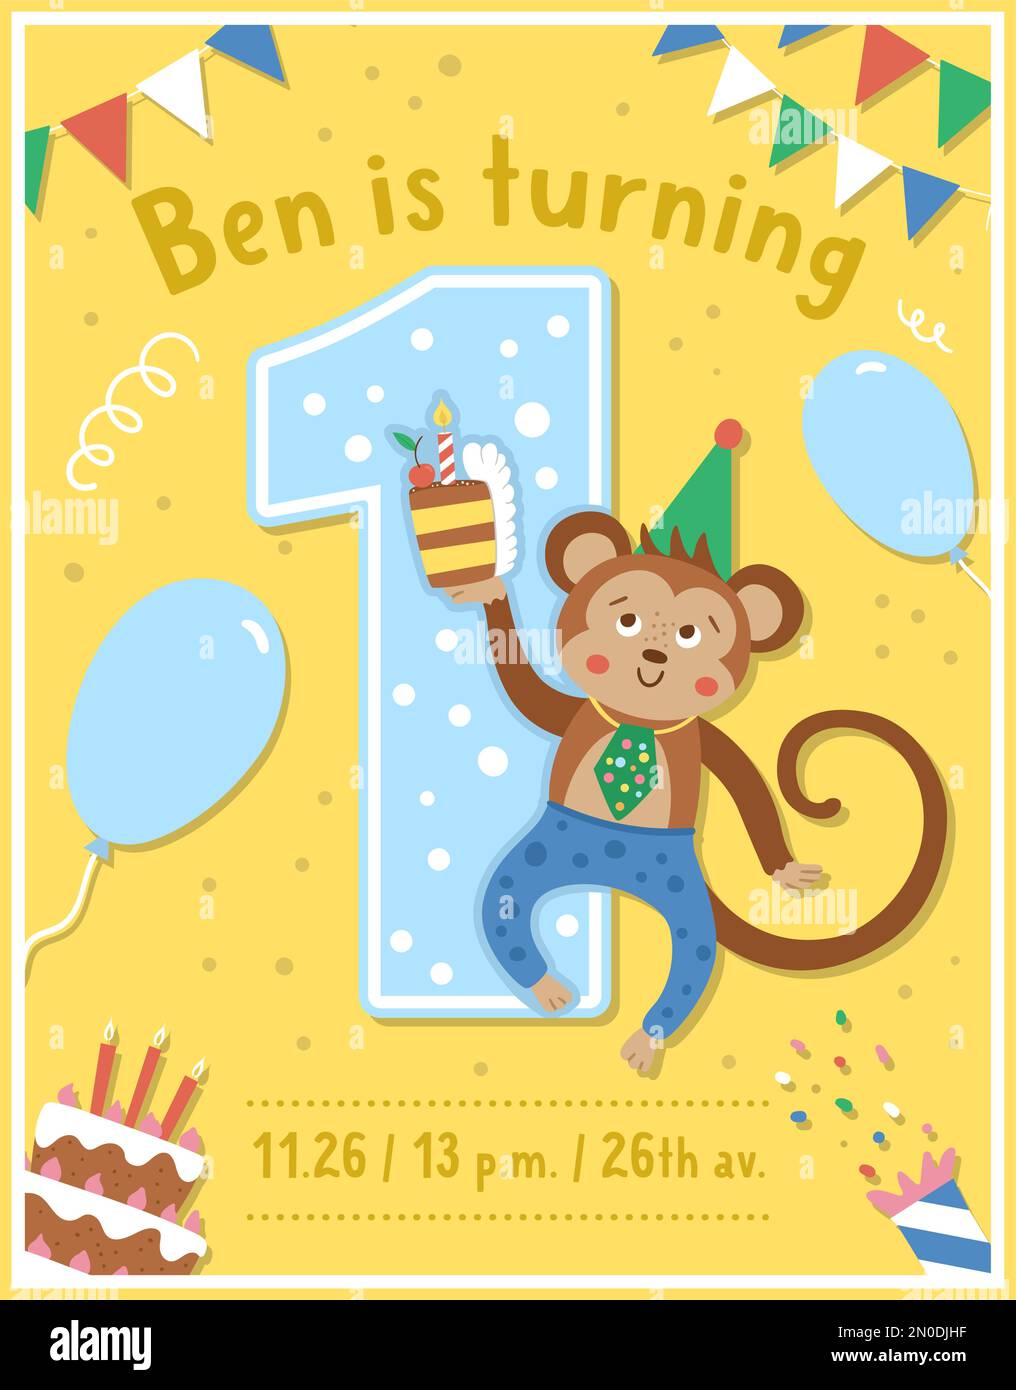 Geburtstagsparty Grußkartenvorlage mit niedlichem Affen. Hochzeitstag-Poster für Kinder. Fröhliche Urlaubsszene mit lustigem tropischen Charakter, Kuchen, Stock Vektor